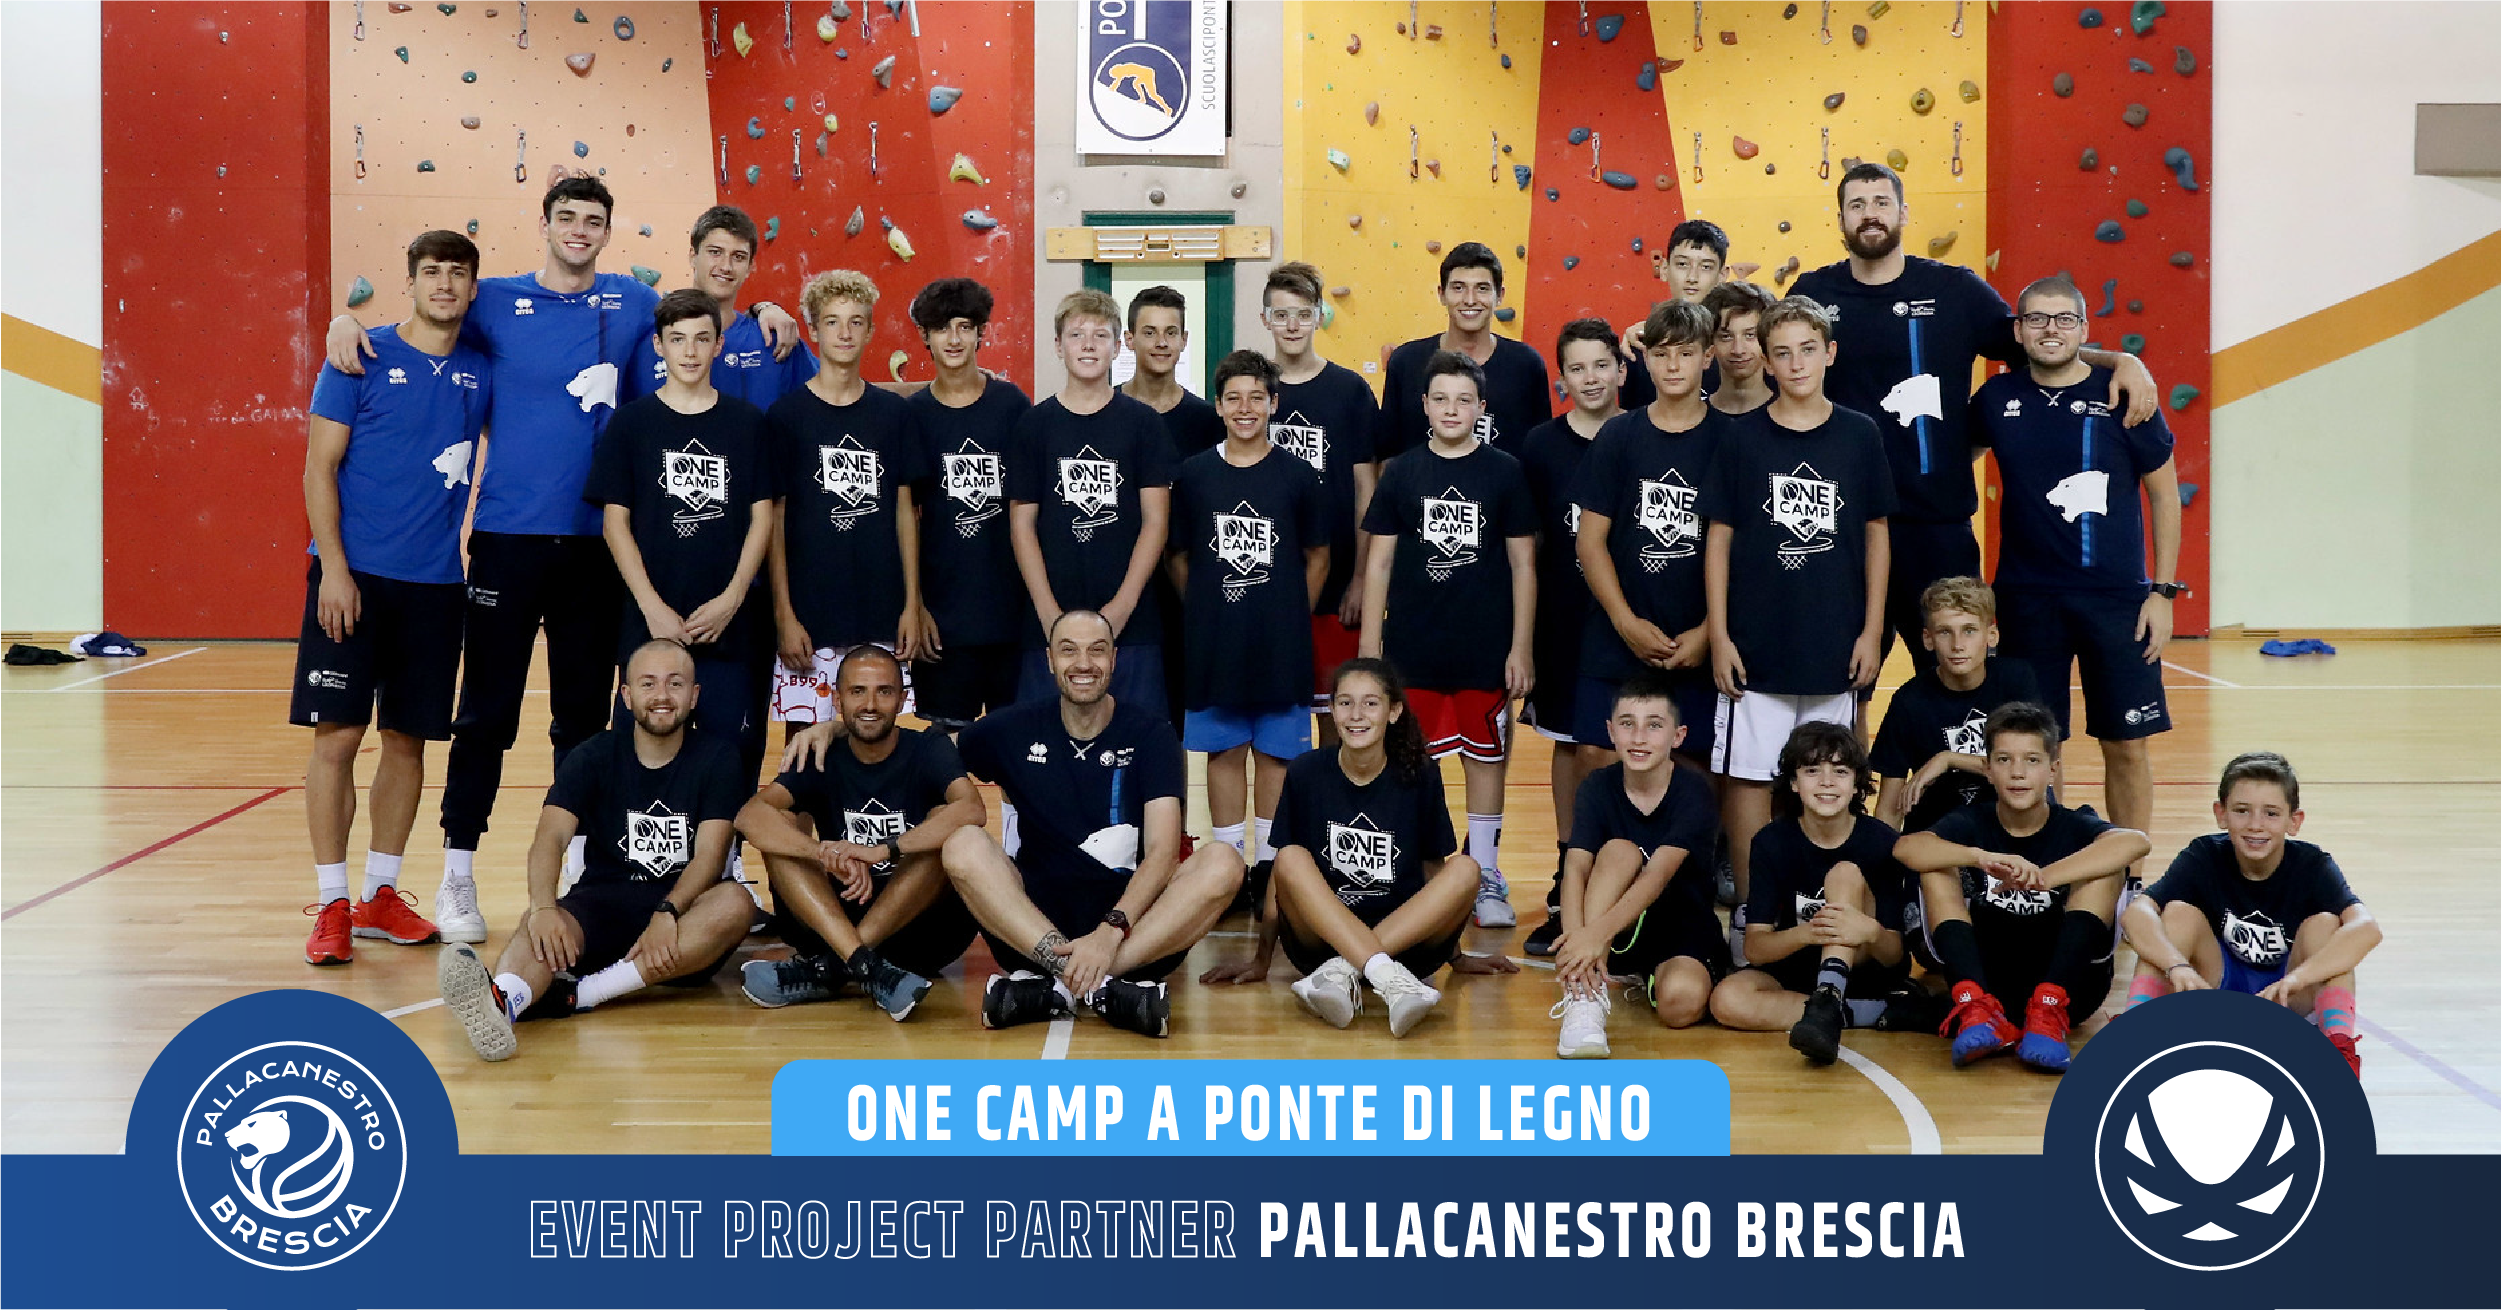 <b>Event Project Partner Pallacanestro Brescia</b> 5